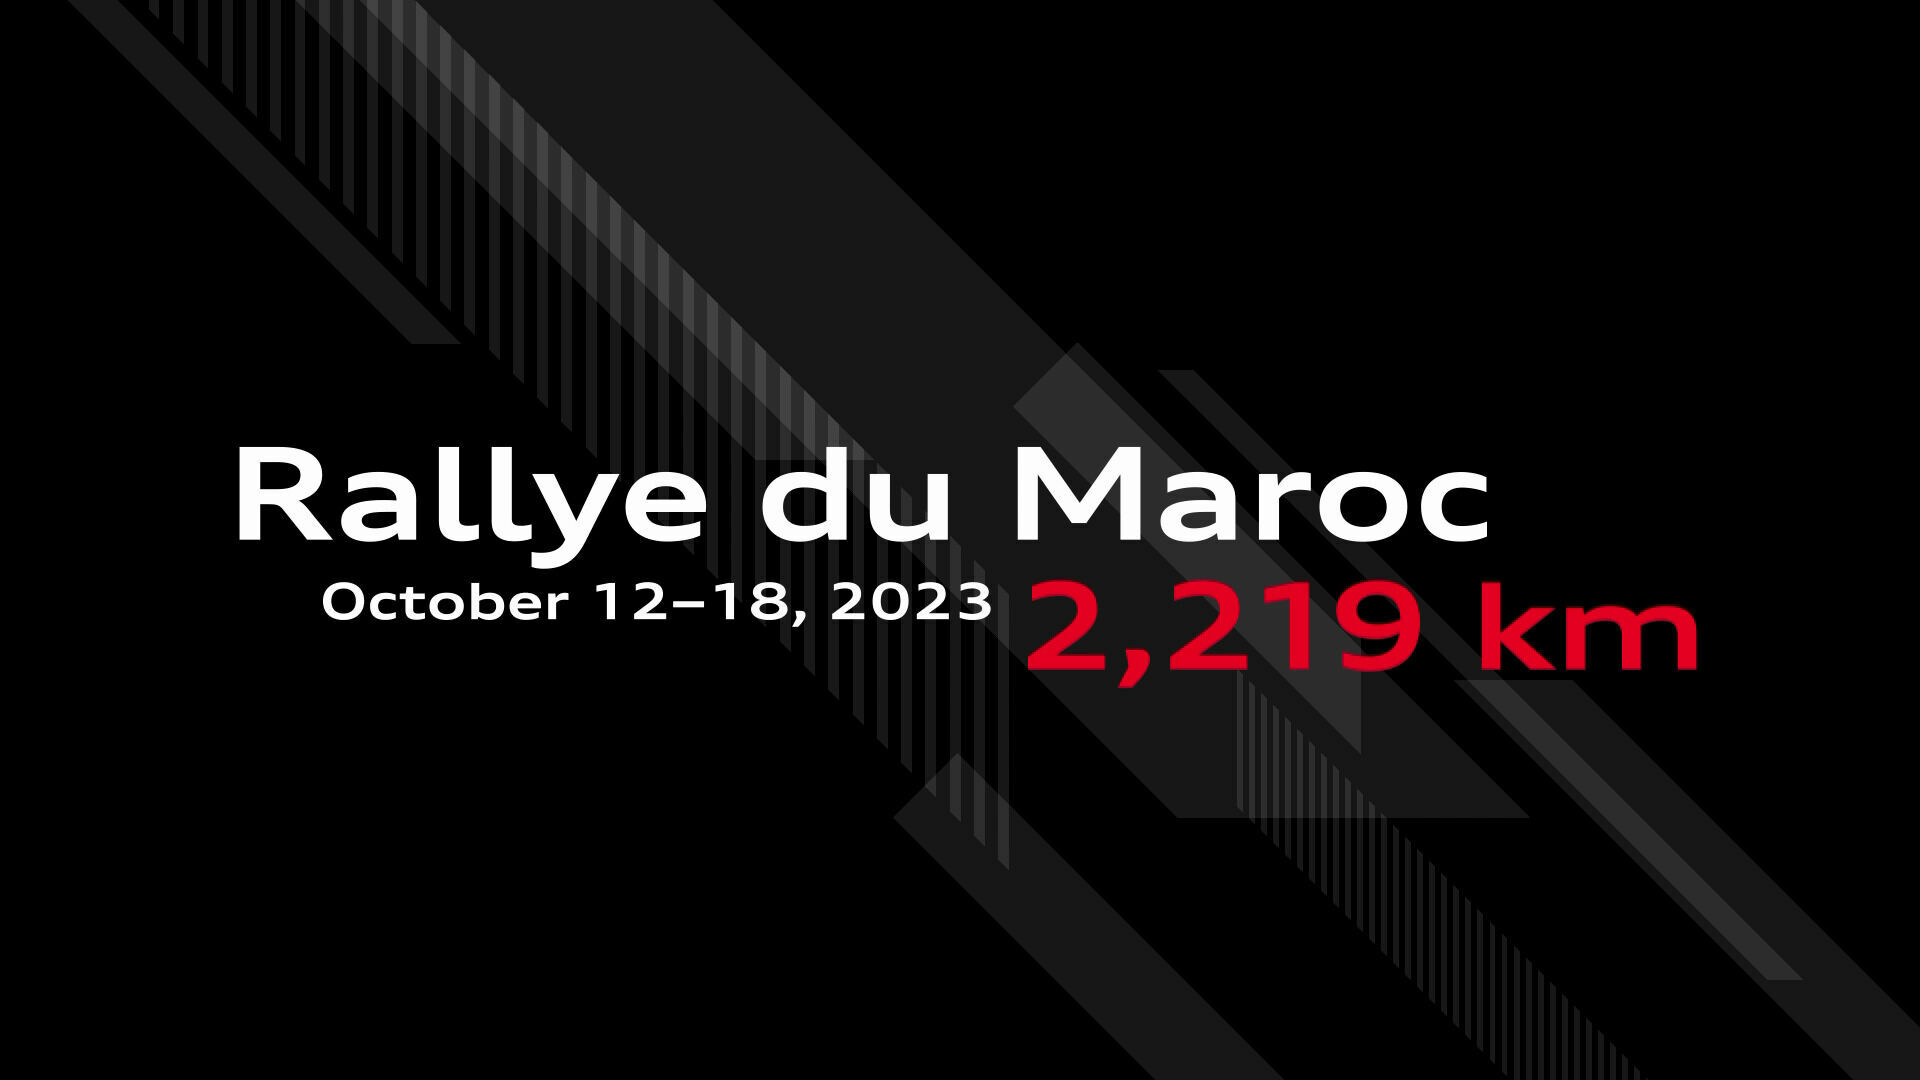 Rallye du Maroc 2023: Route